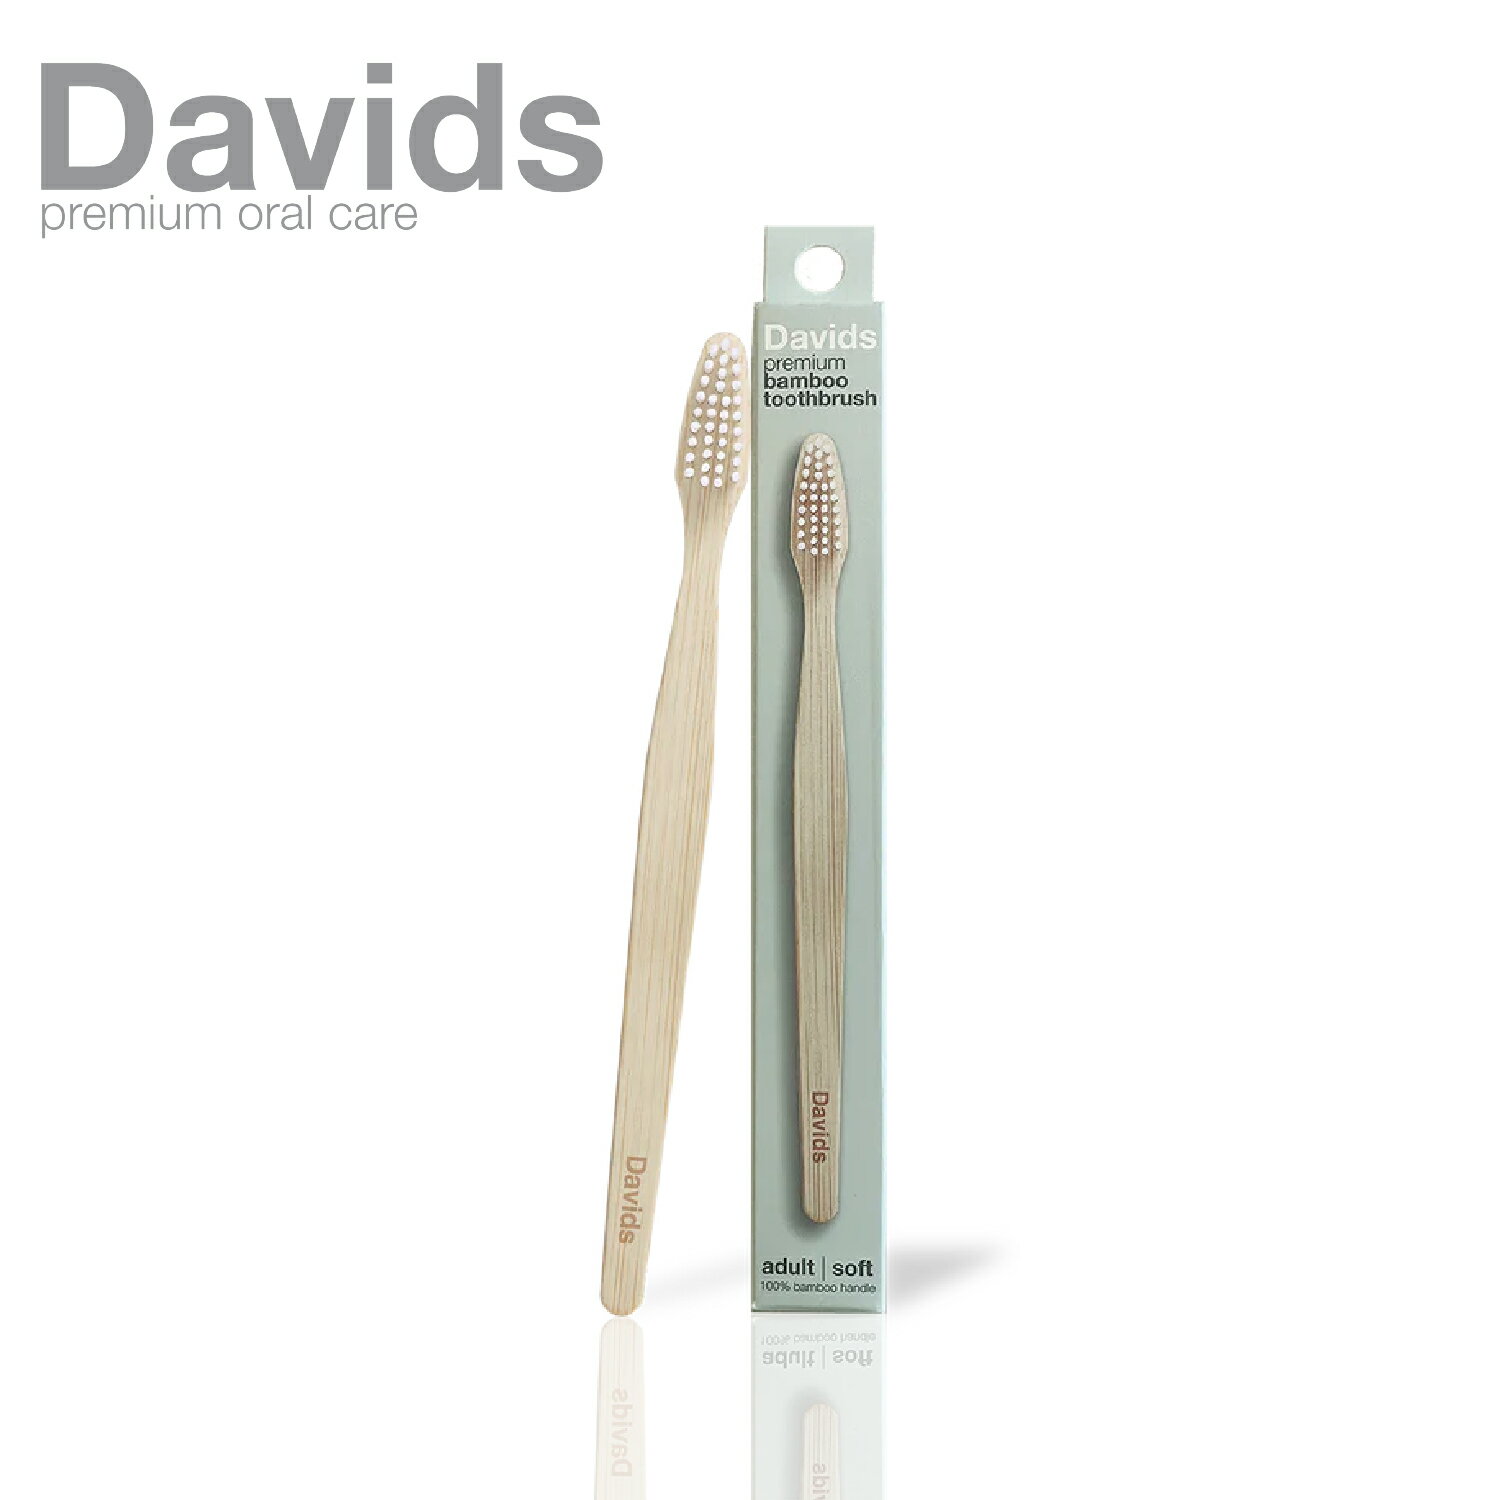 Davids プレミアムバンブー歯ブラシ 歯ブラシ 口腔ケア 竹 バンブー 竹製歯ブラシ バイオプラスチック 植物由来 サスティナブル FSC認証 磨きやすい やわらかめ BPAフリー ヴィーガン